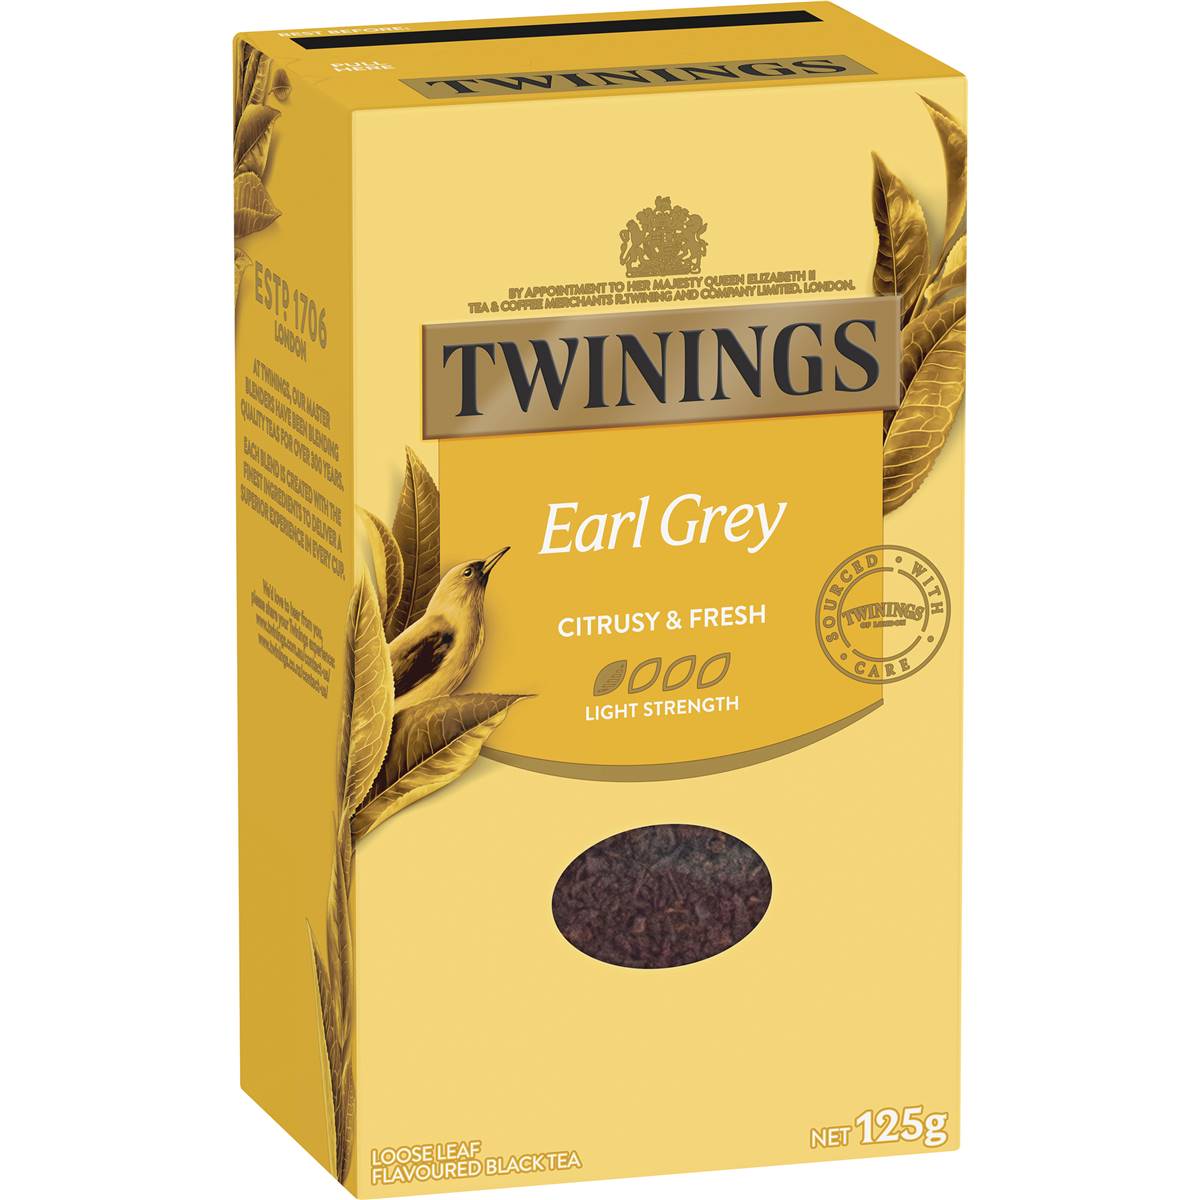 Calories in Twinings Earl Grey Loose Leaf Tea